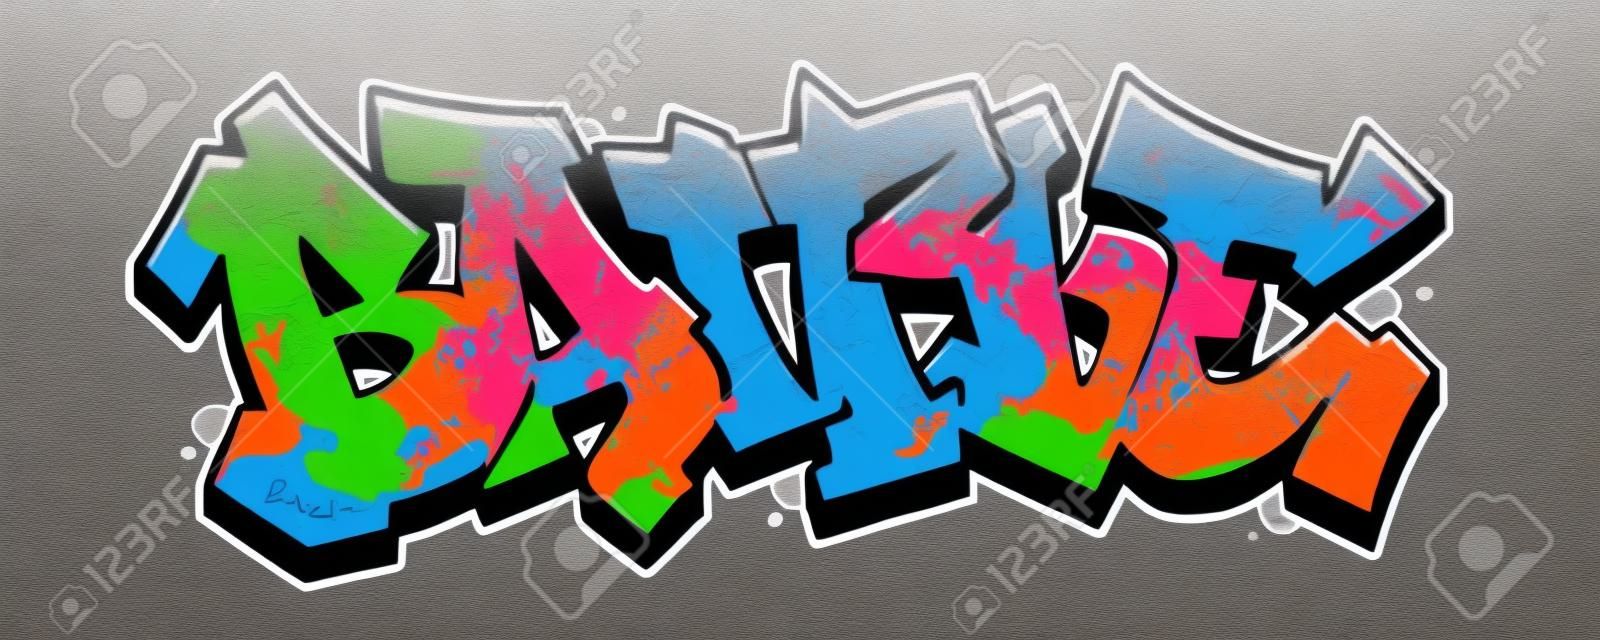 Slagwoord in leesbare graffiti stijl in levendige aanpasbare kleuren.